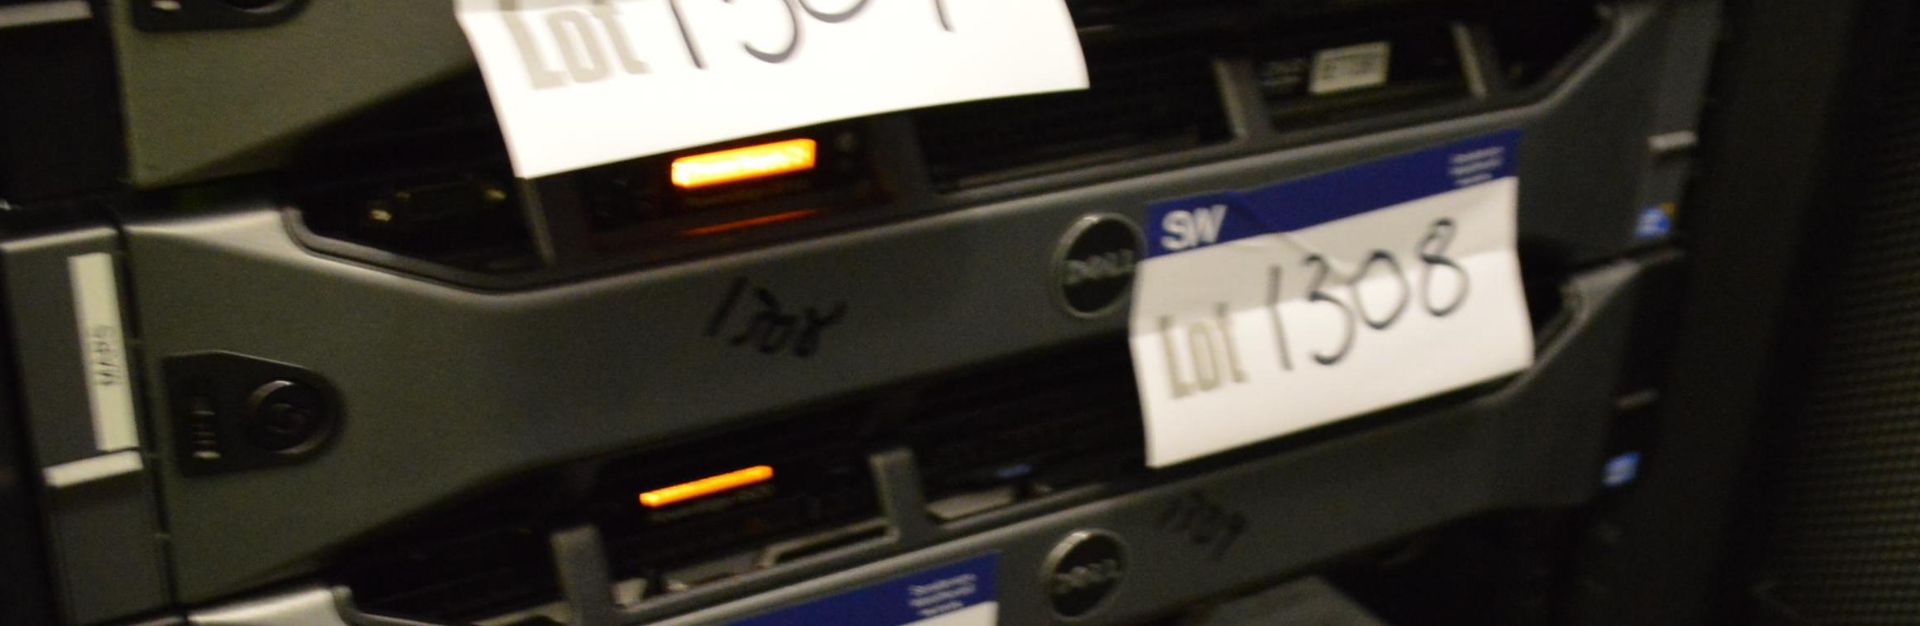 Dell PowerEdge R710 Server, tag no. 8Q8Y05J (19001